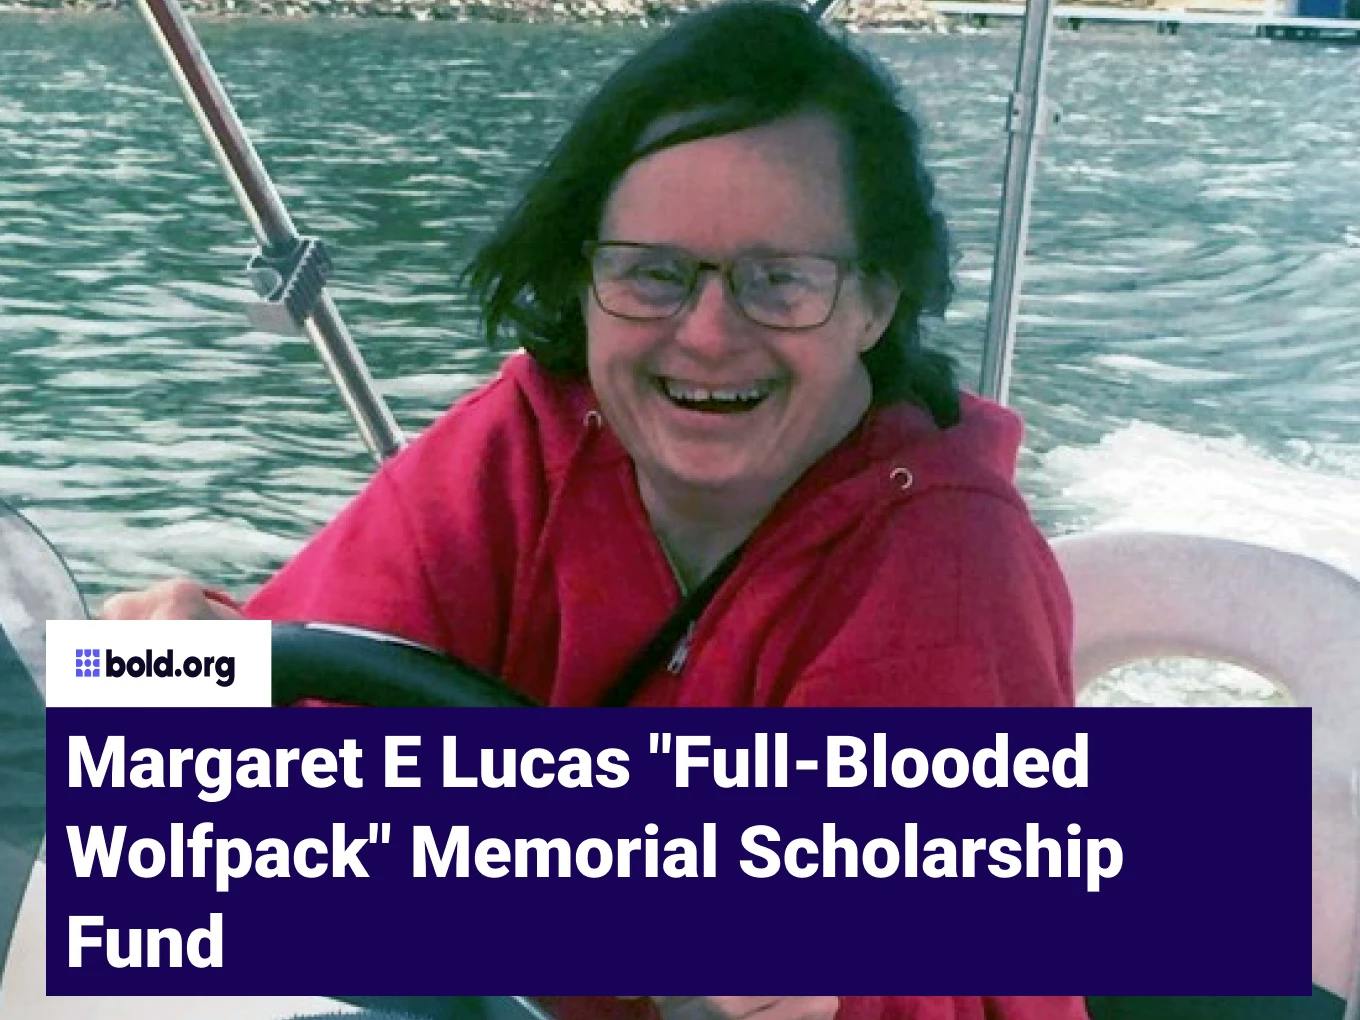 Margaret E Lucas "Full-Blooded Wolfpack" Memorial Scholarship Fund